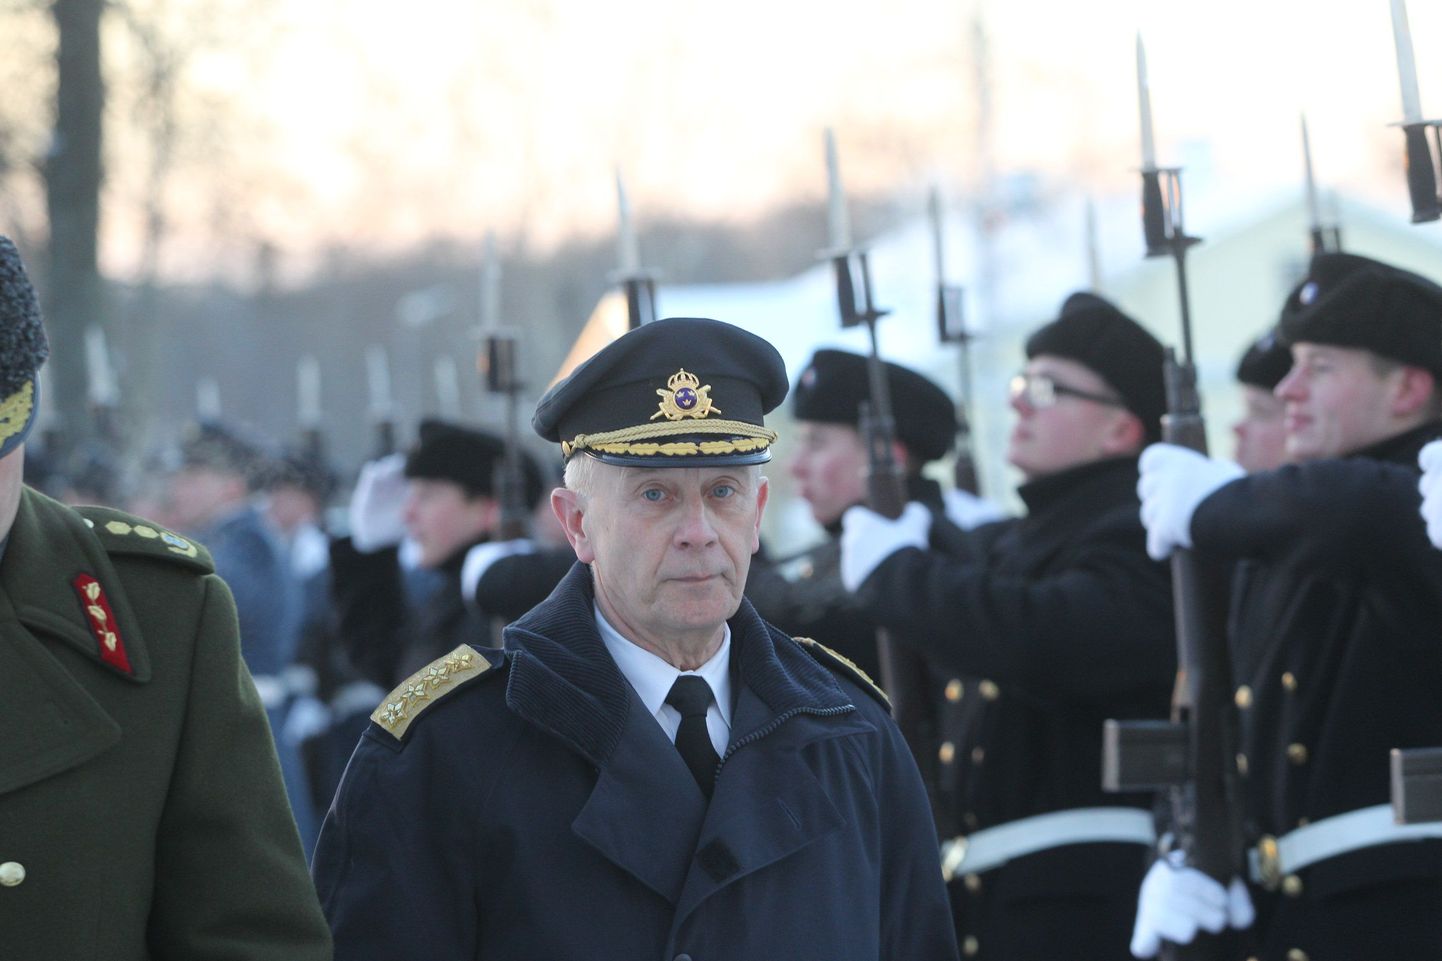 Kaitseväe juhataja Riho Terras võttis kaitseväe peastaabis vastu Rootsi kaitseväe juhataja kindral Sverker Göransoni.